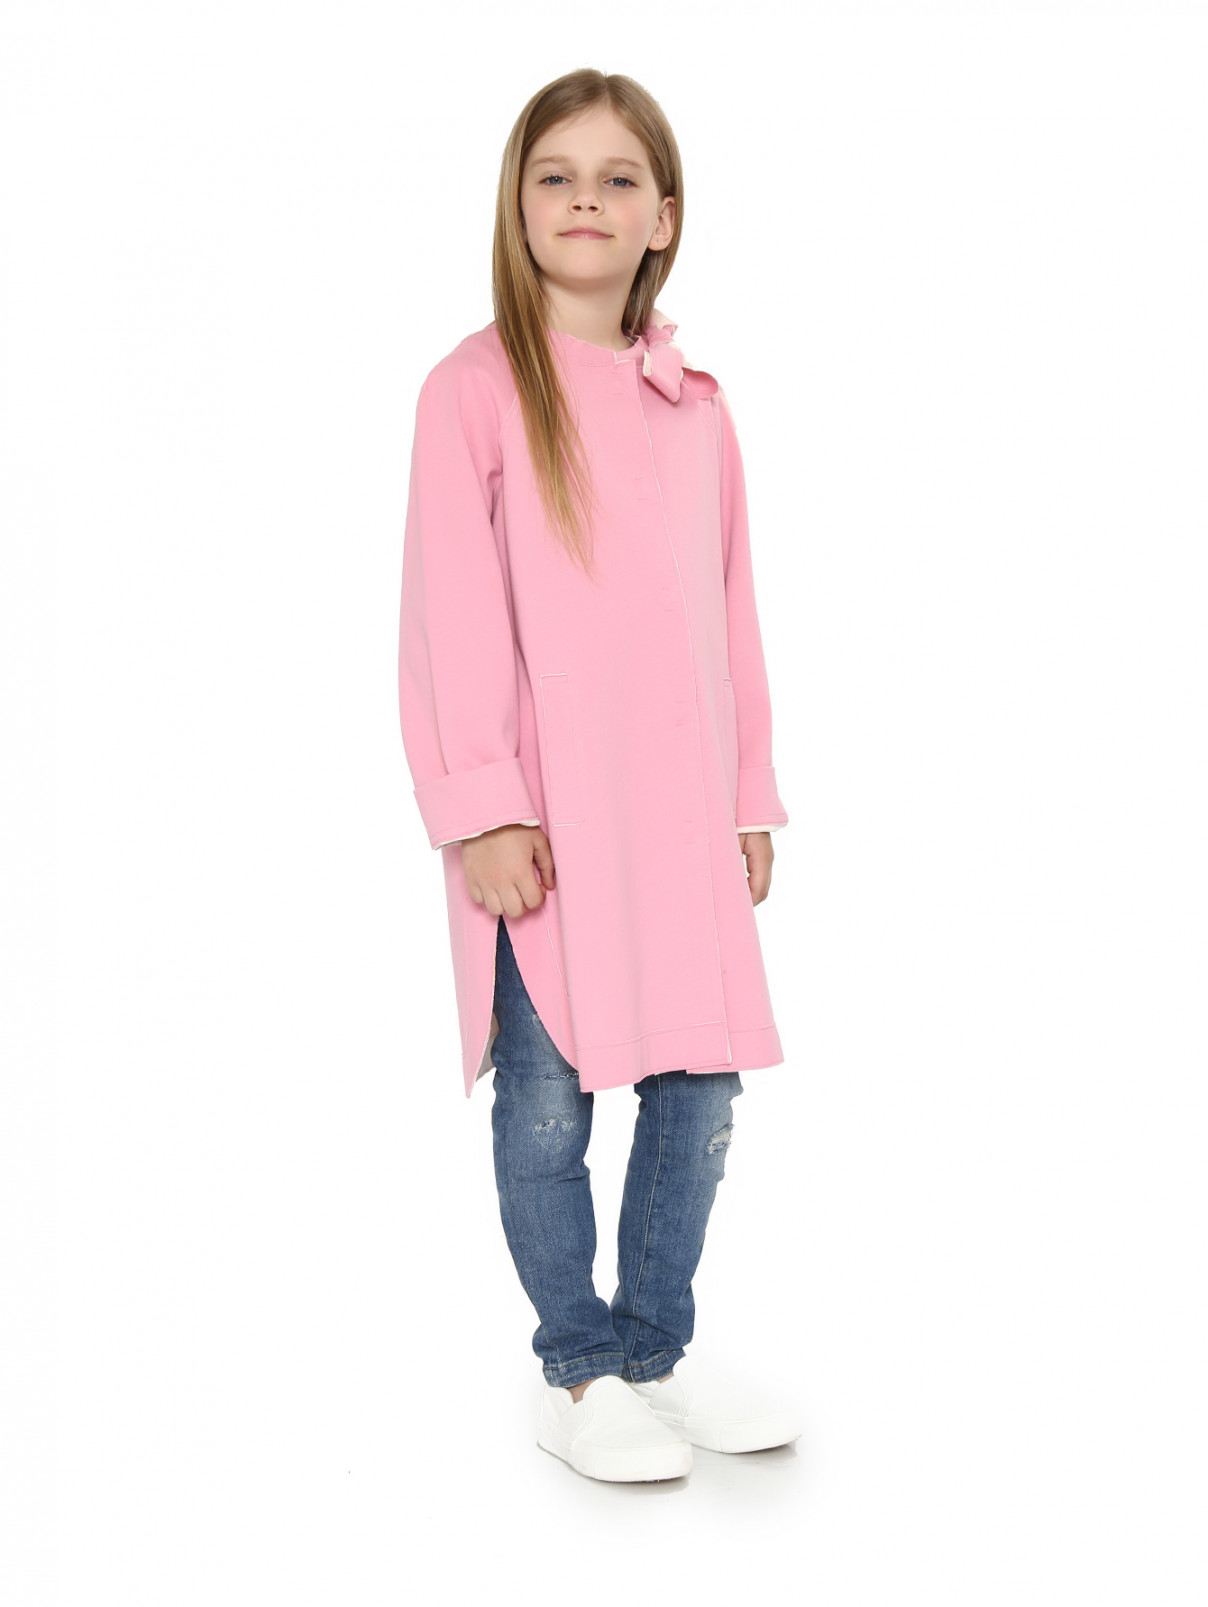 Легкое пальто из хлопка с декором MiMiSol  –  Модель Общий вид  – Цвет:  Розовый